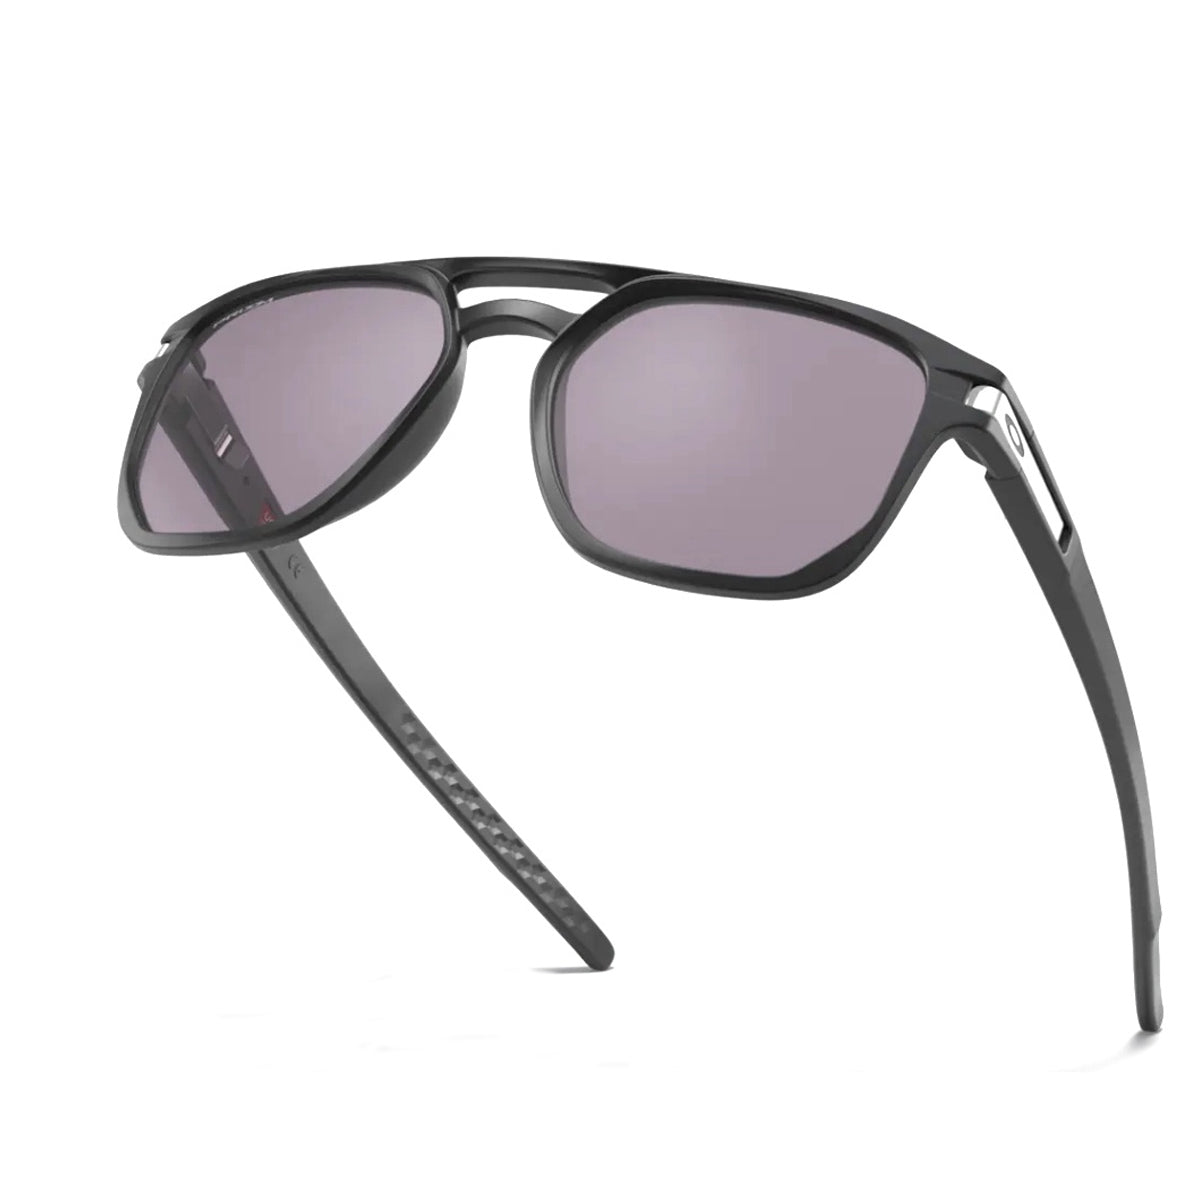 OO9436 943601-Occhiali da sole-Oakley-Un occhiale che rimane sportivo nella sua essenza, dinamico con il suo frontale squadrato e il ponte a chiave. Oakley Latch Beta è realizzato in un materiale esclusivo chiamato O-Metter, leggero, comodo e resistente che vi permetterà di portare con voi in ogni situazione questi occhiali. Le lenti si presentano in una versione esclusiva di Oakley, ossia Prizm, una lente tecnologica in grado di ottimizzare i colori, rendendo i dettagli perfetti ed i contrasti potenziati. 